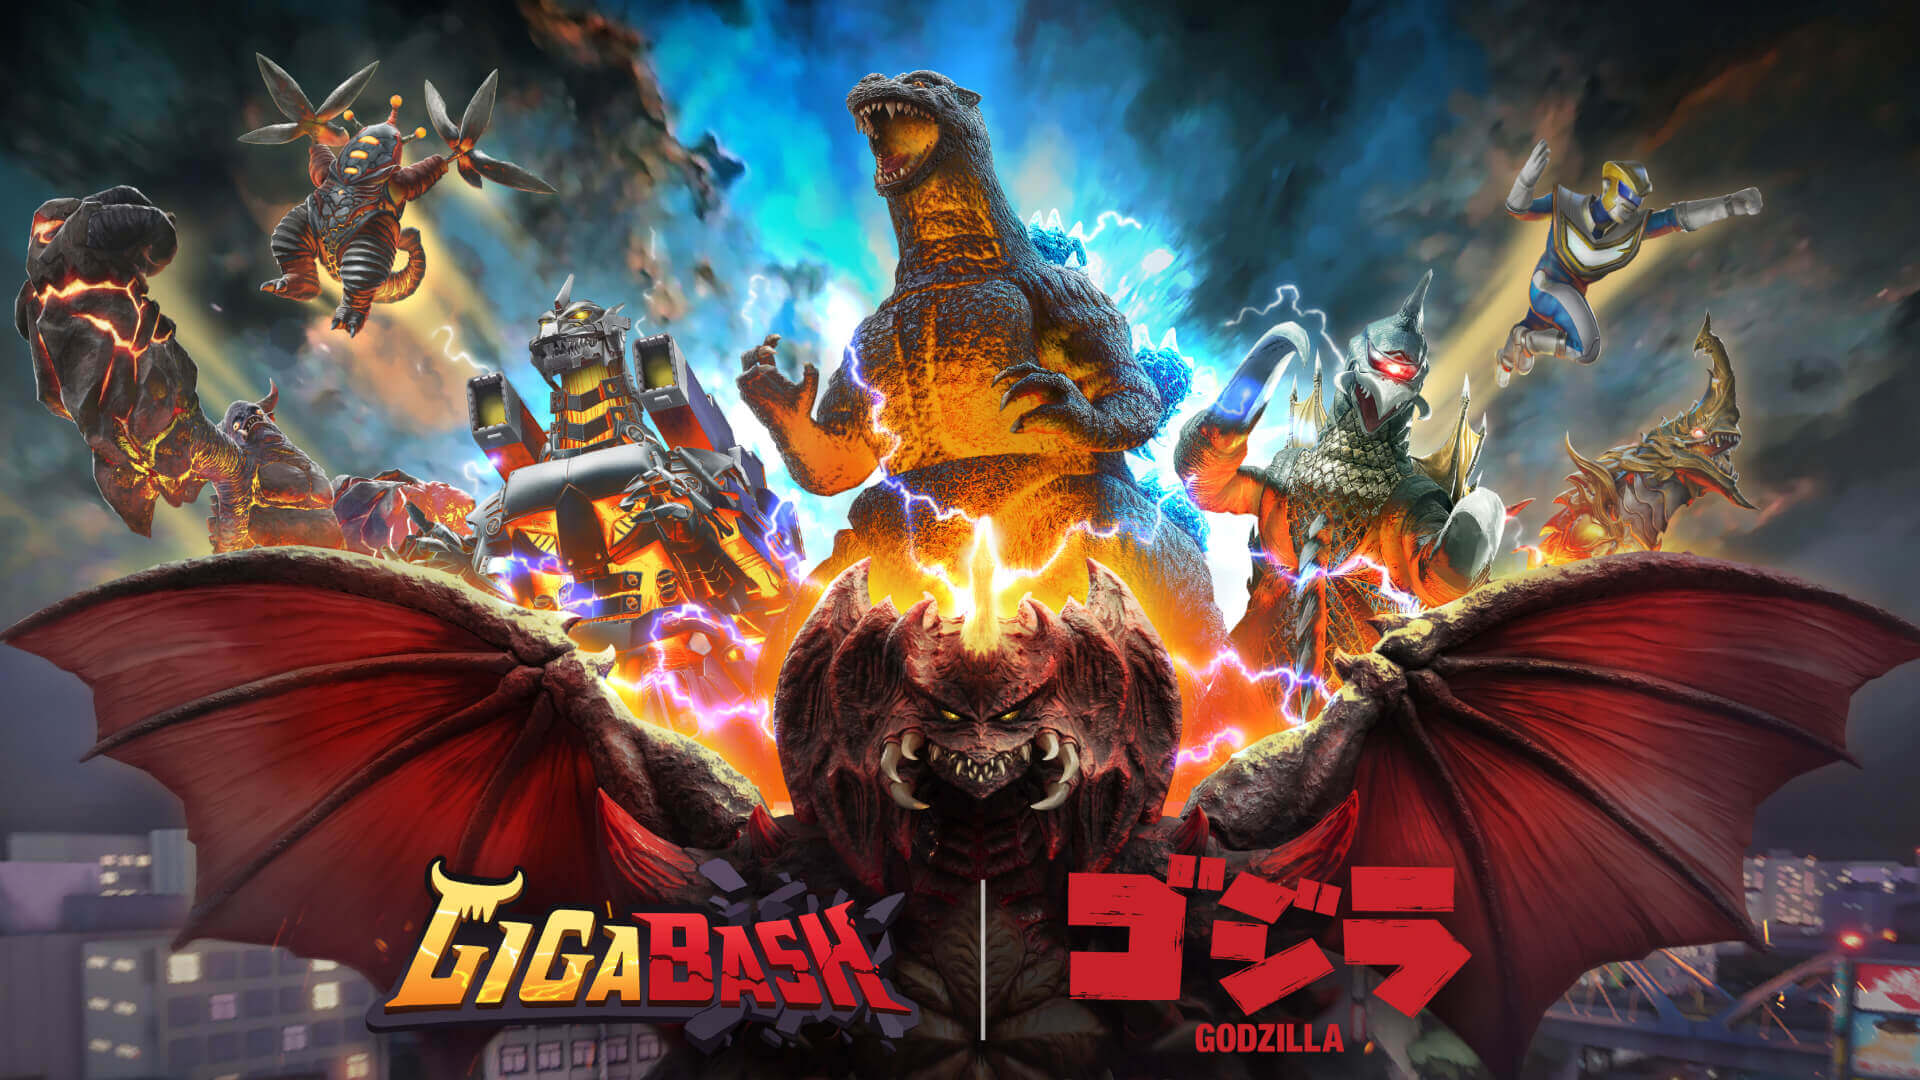 Godzilla Gigabash Banner Image